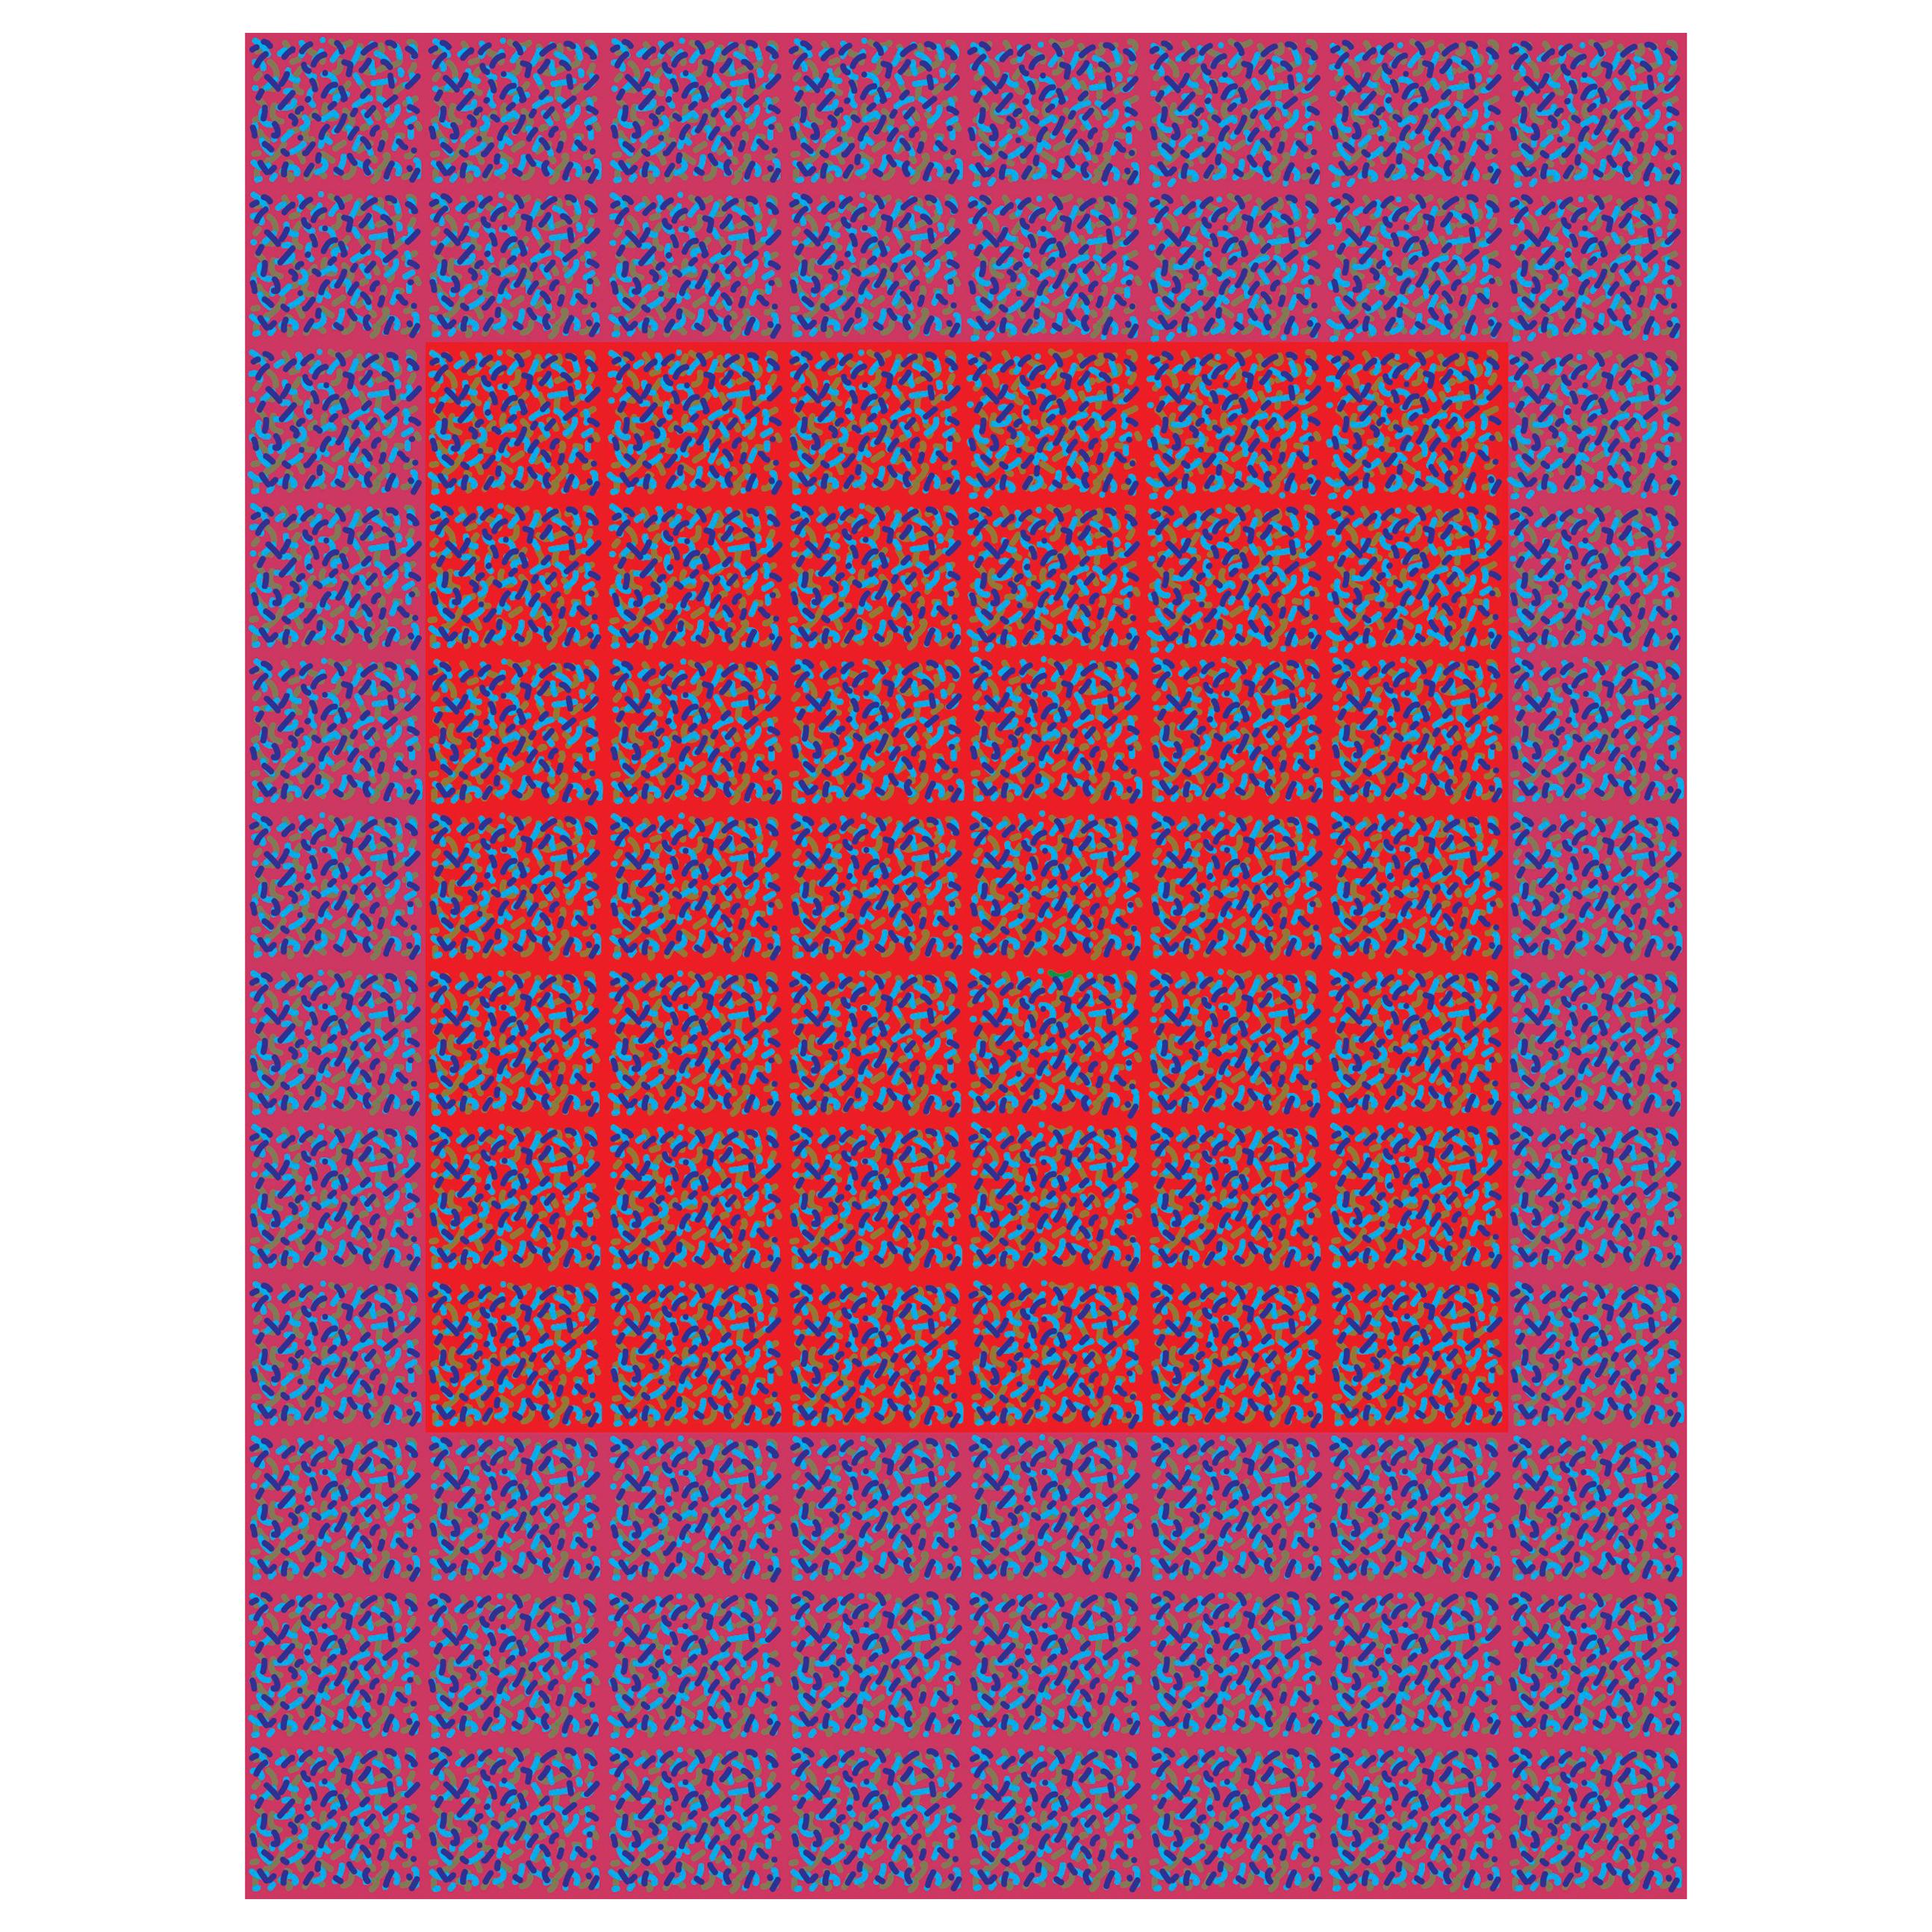 Impression numérique abstraite conceptuelle abstraite « Confetti Red Square V2 » de Michael Zenreich